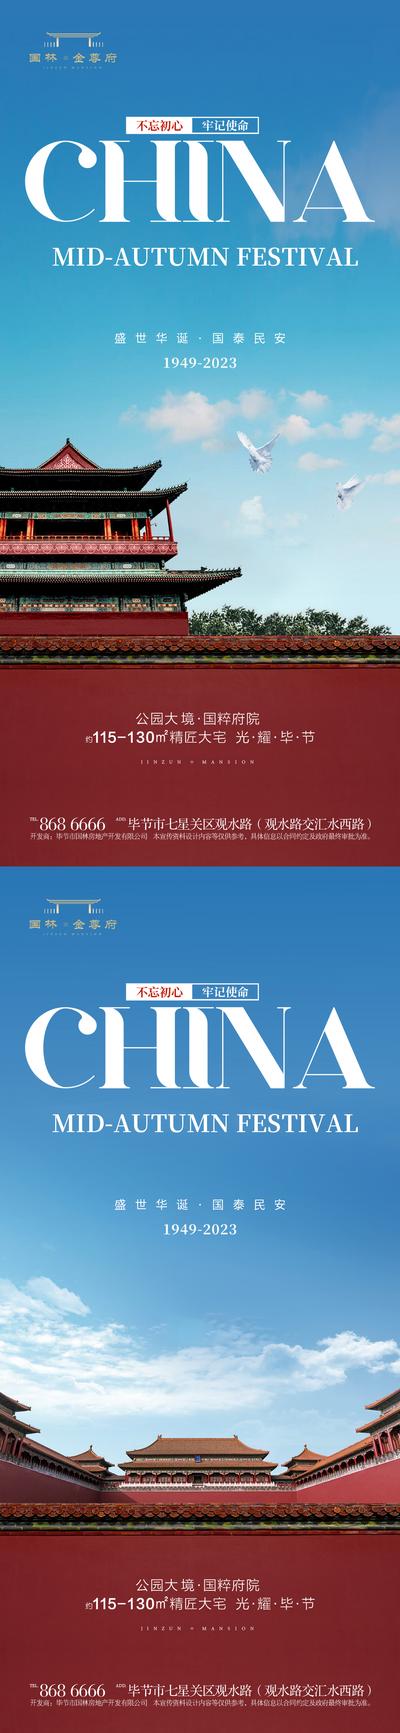 南门网 广告 地产 节日 国庆 长城 十一 国家 庆祝 CHINA 放假 微信 城池 城墙 天安门 建筑